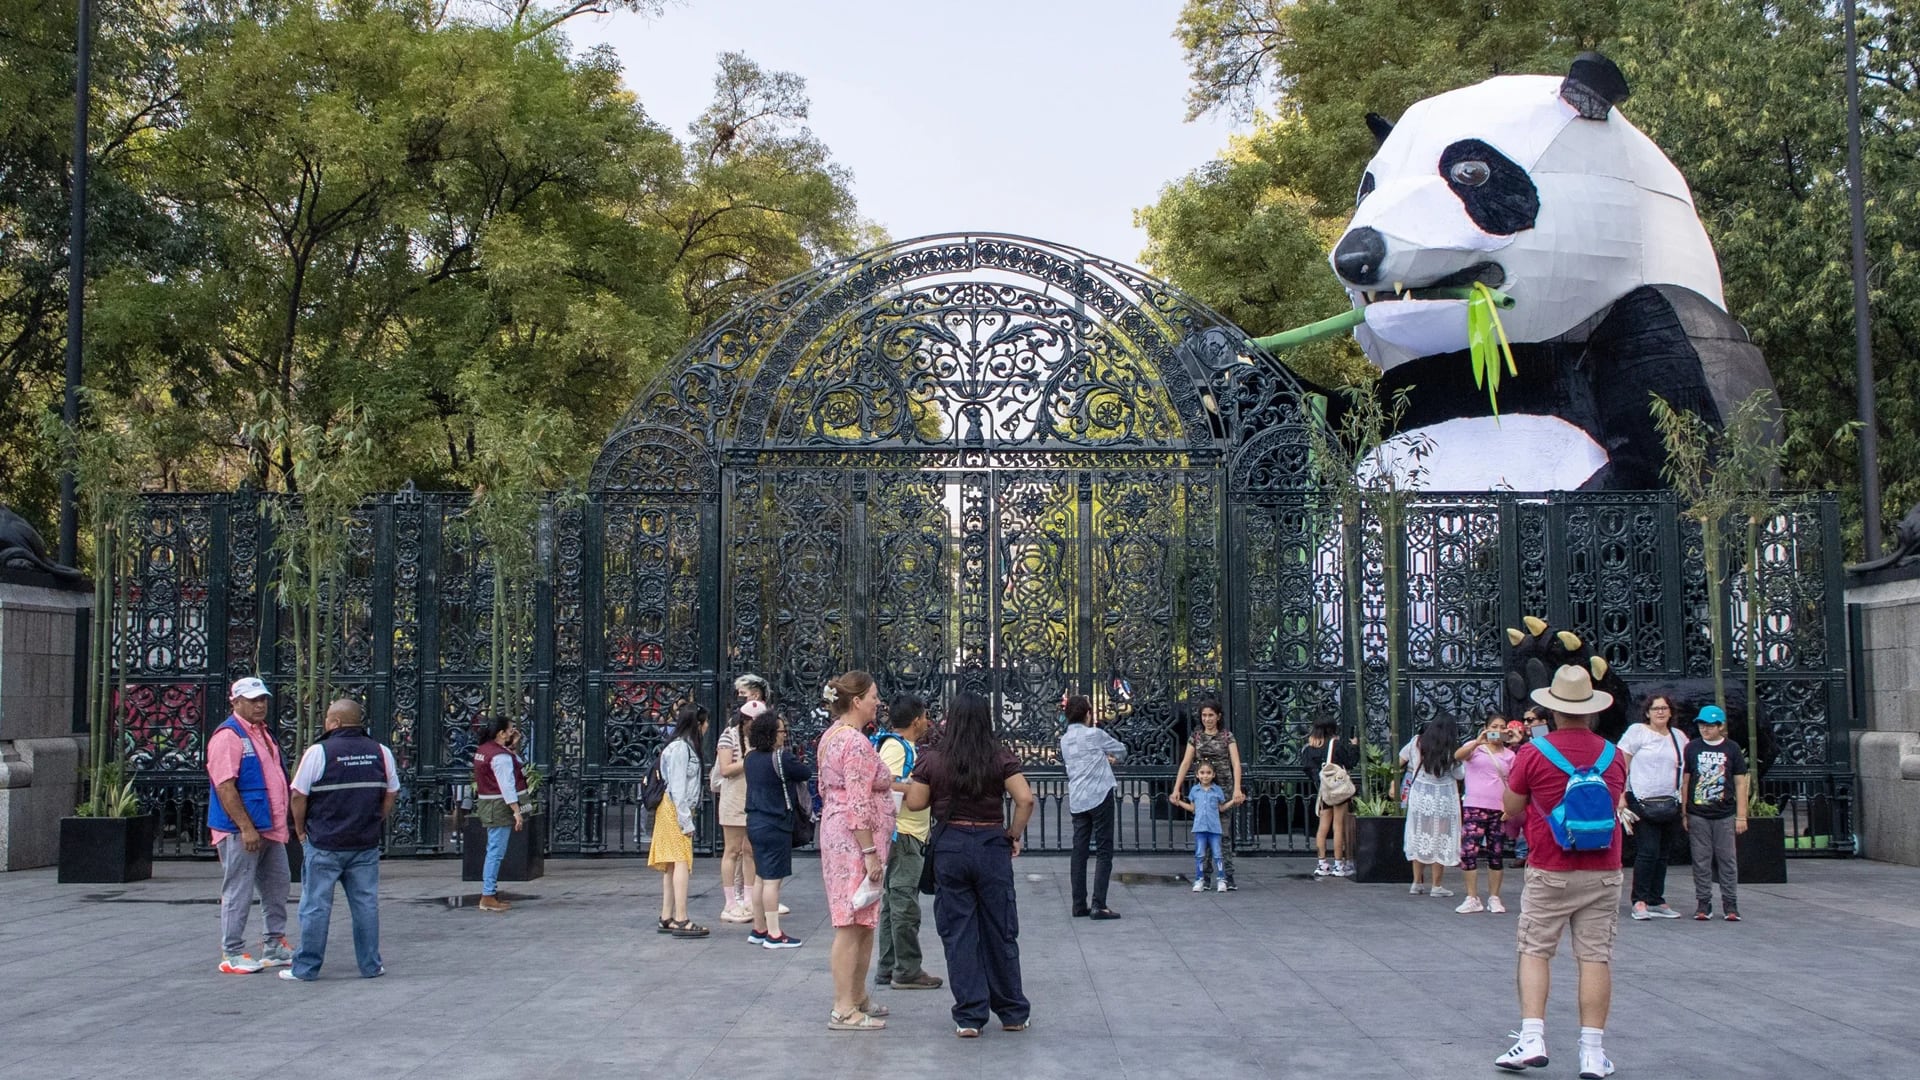 Las obras de mantenimiento se llevarán a cabo en diversas entradas como la emblemática Puerta de los Leones, la cual permanecerá cerrada hasta diciembre.
(Foto: Tw Bosque de Chapultepec)